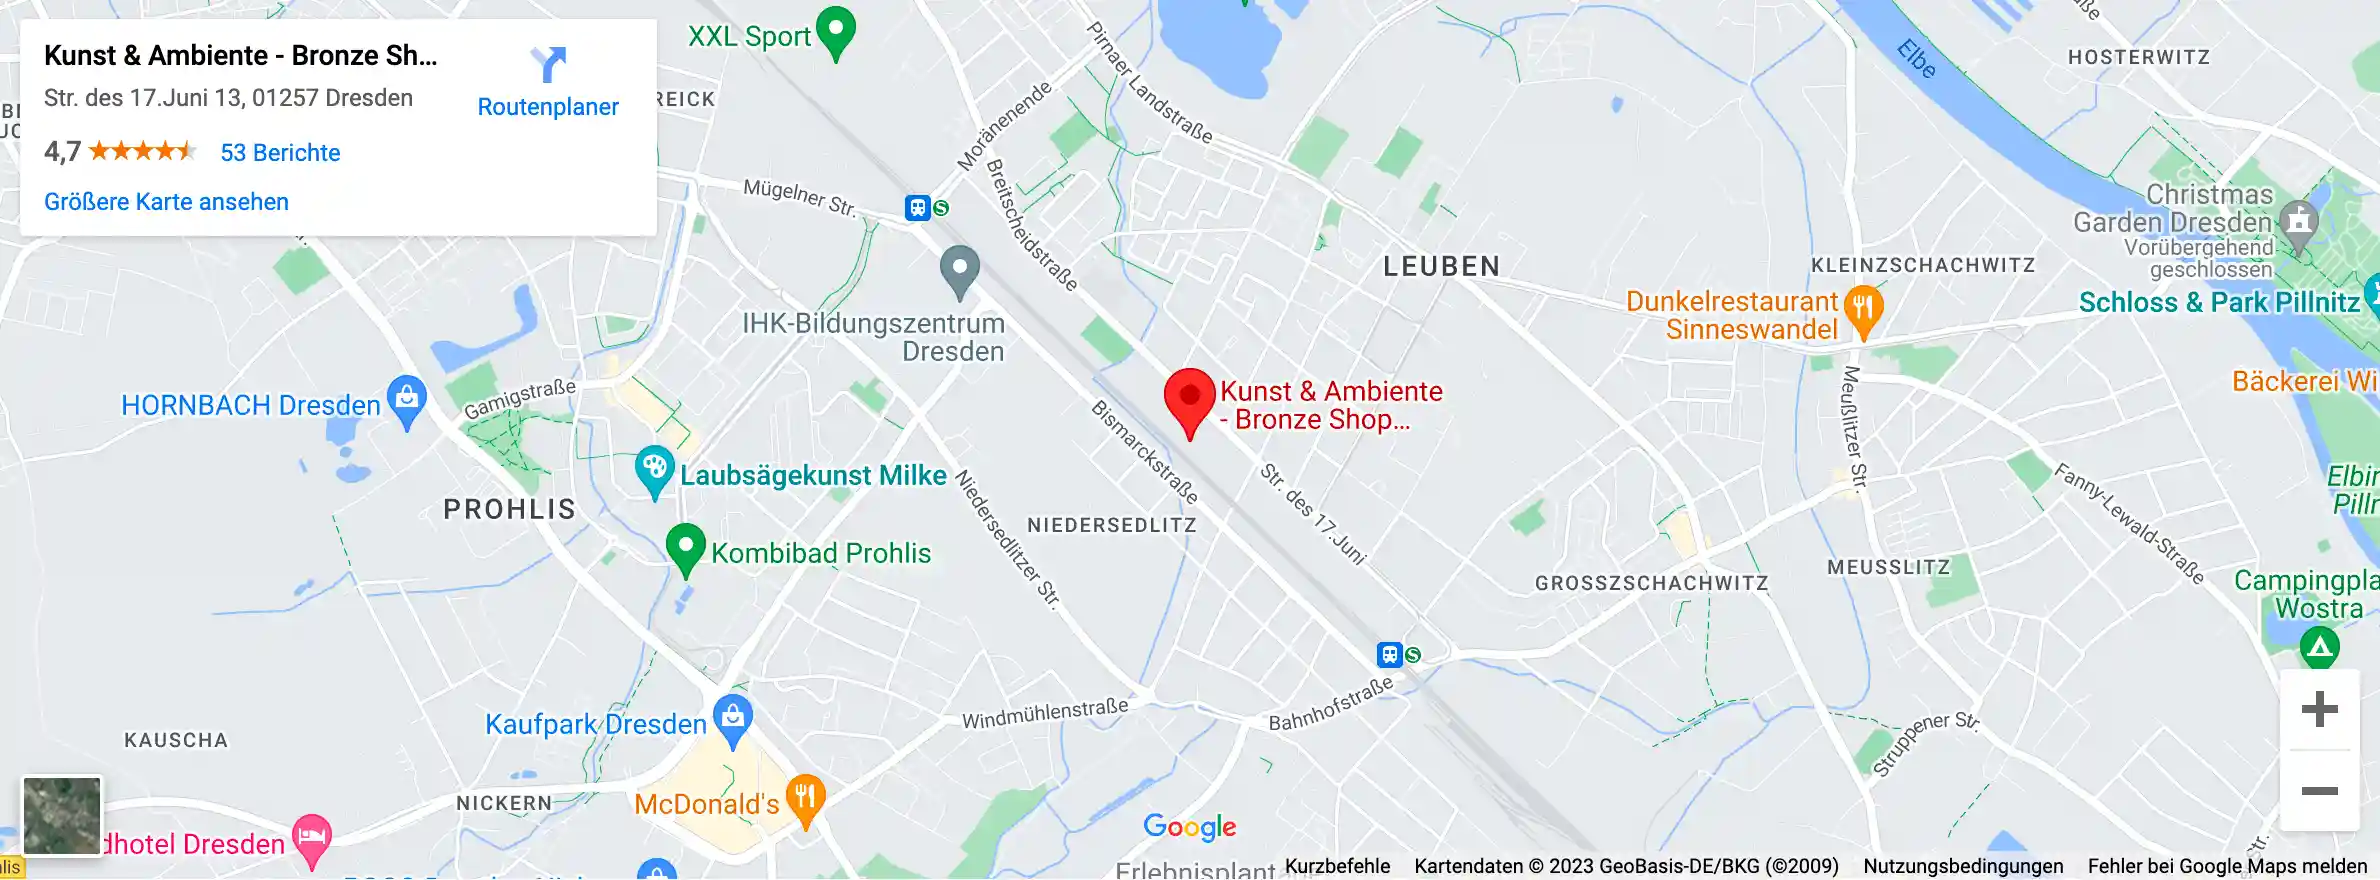 Google Map - Standort Bronze Shop Showroom